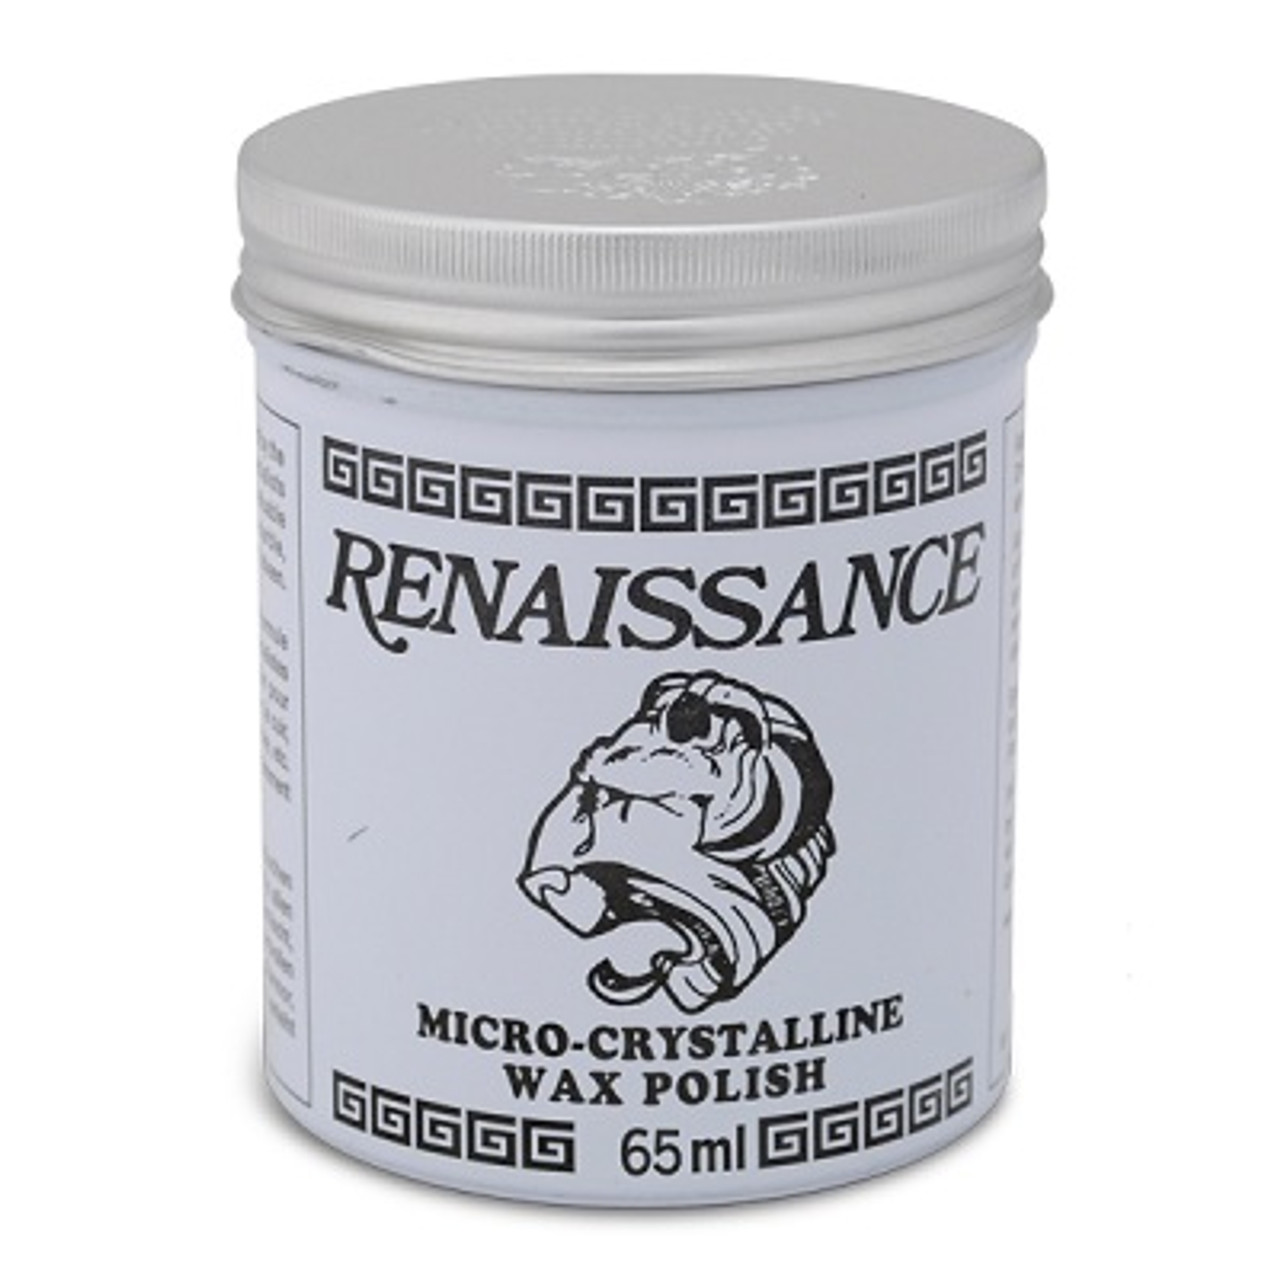 Renaissance Wax Polish , 200 ml or 65 ml